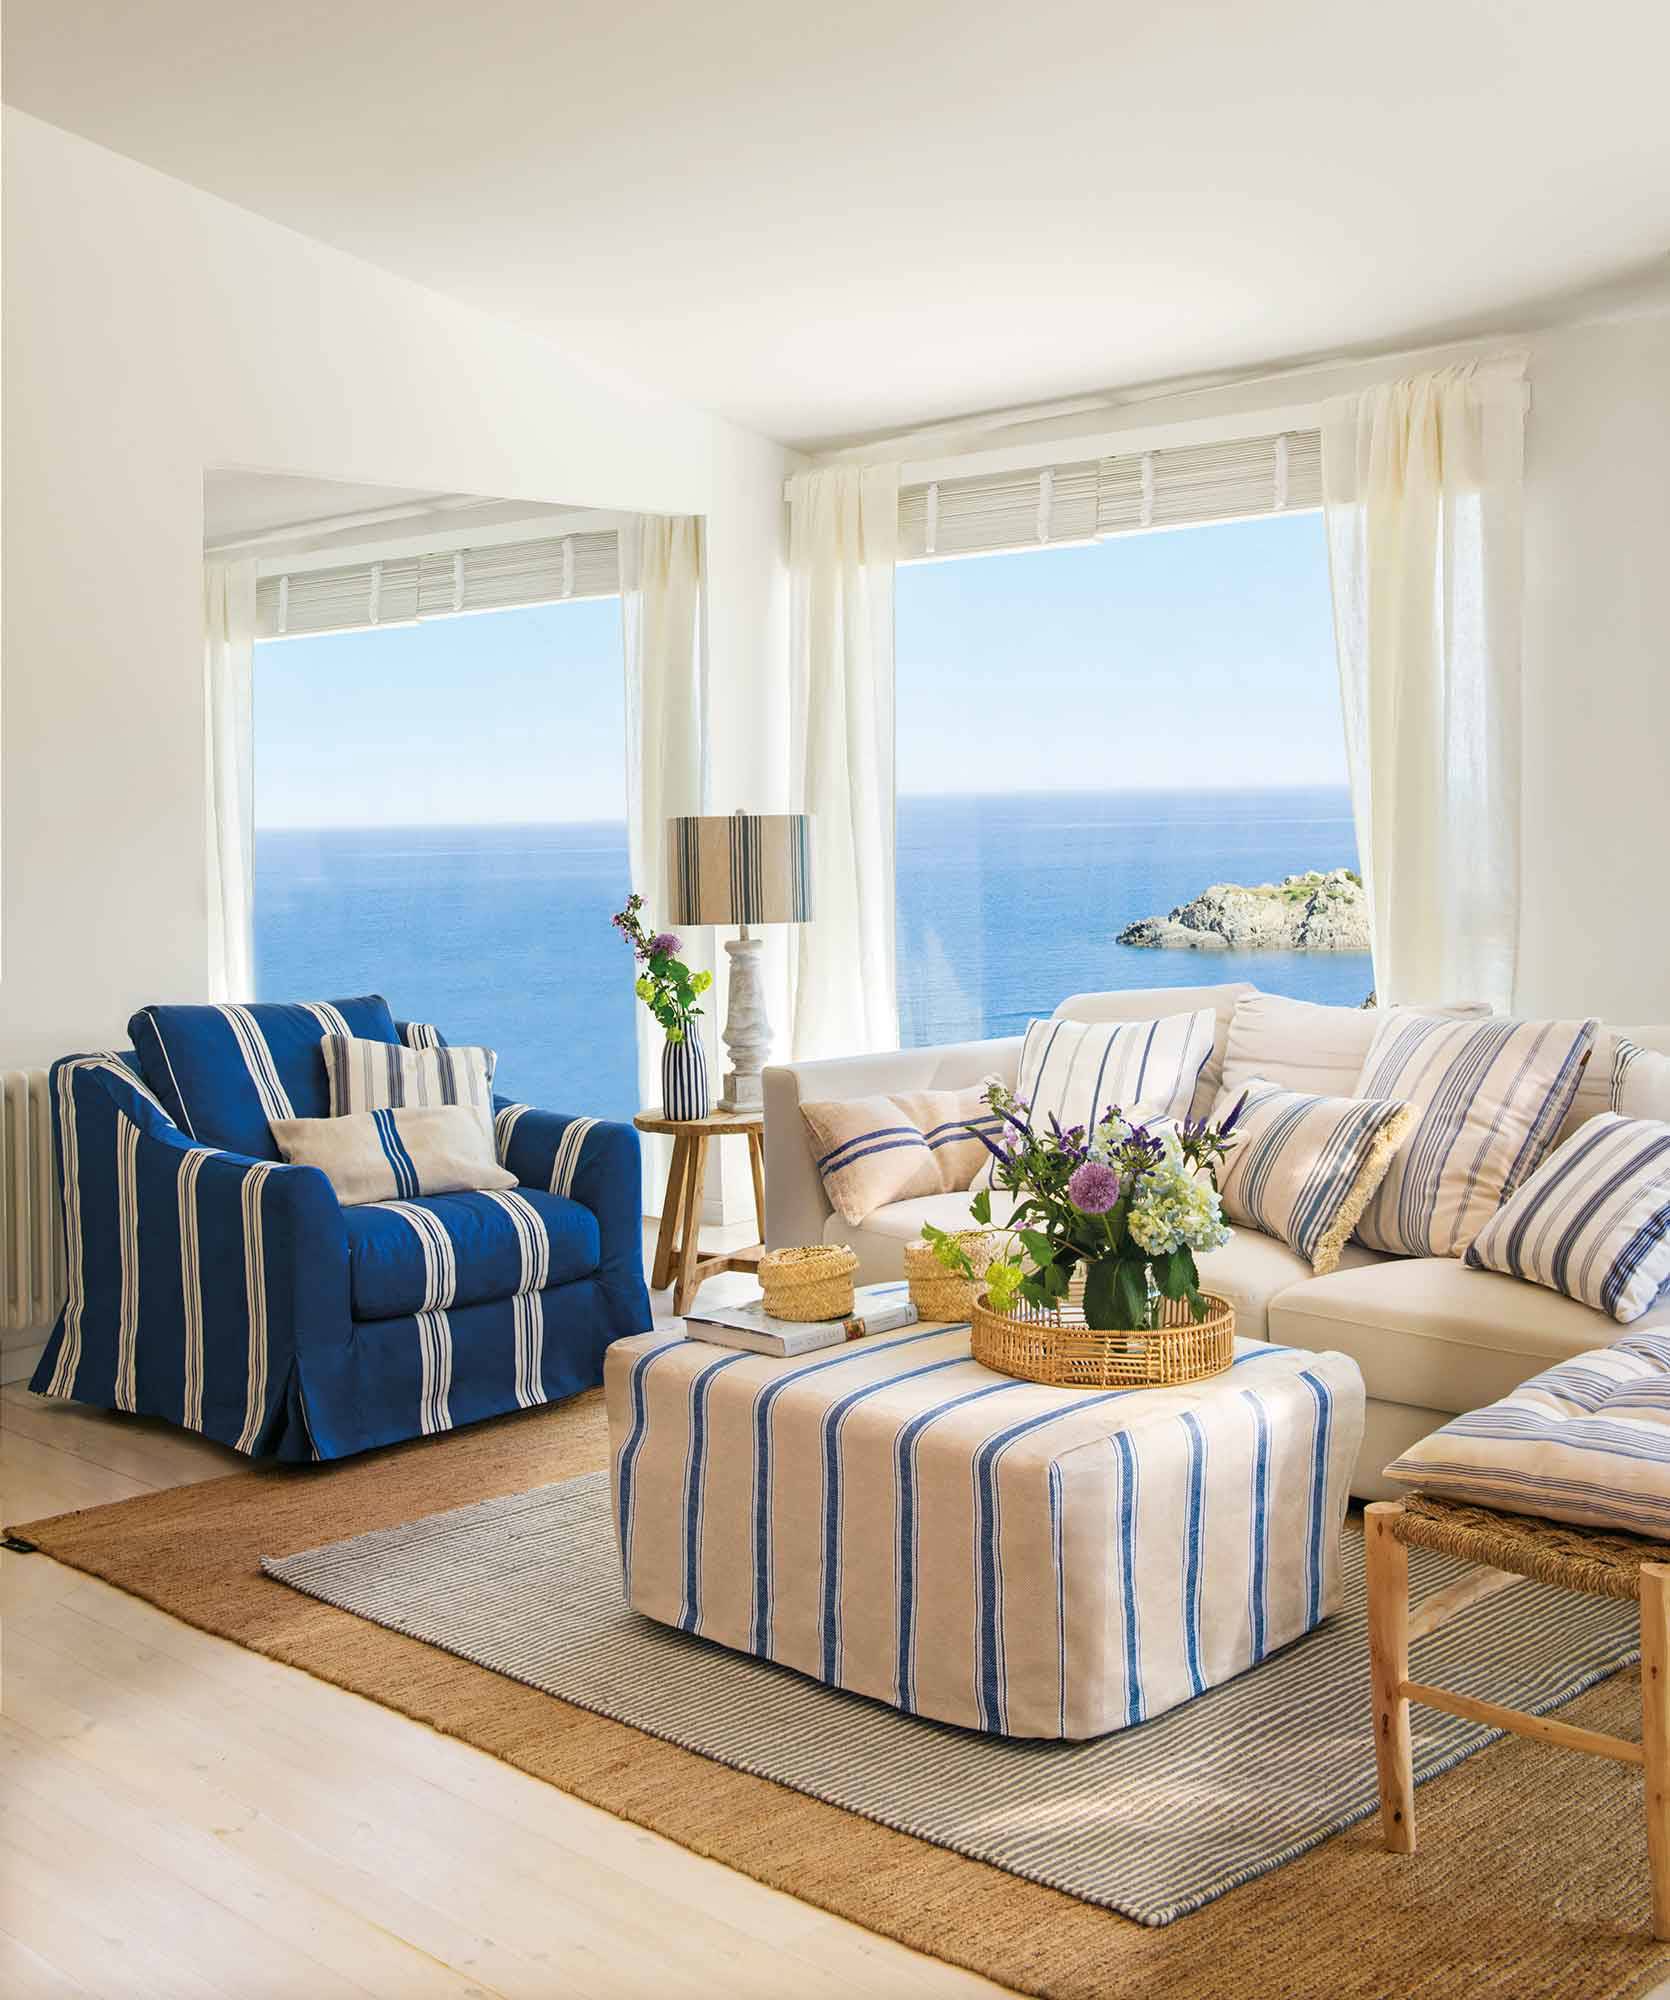 Salón marinero con tapicerías a rayas azules y blancas y vistas al mar.